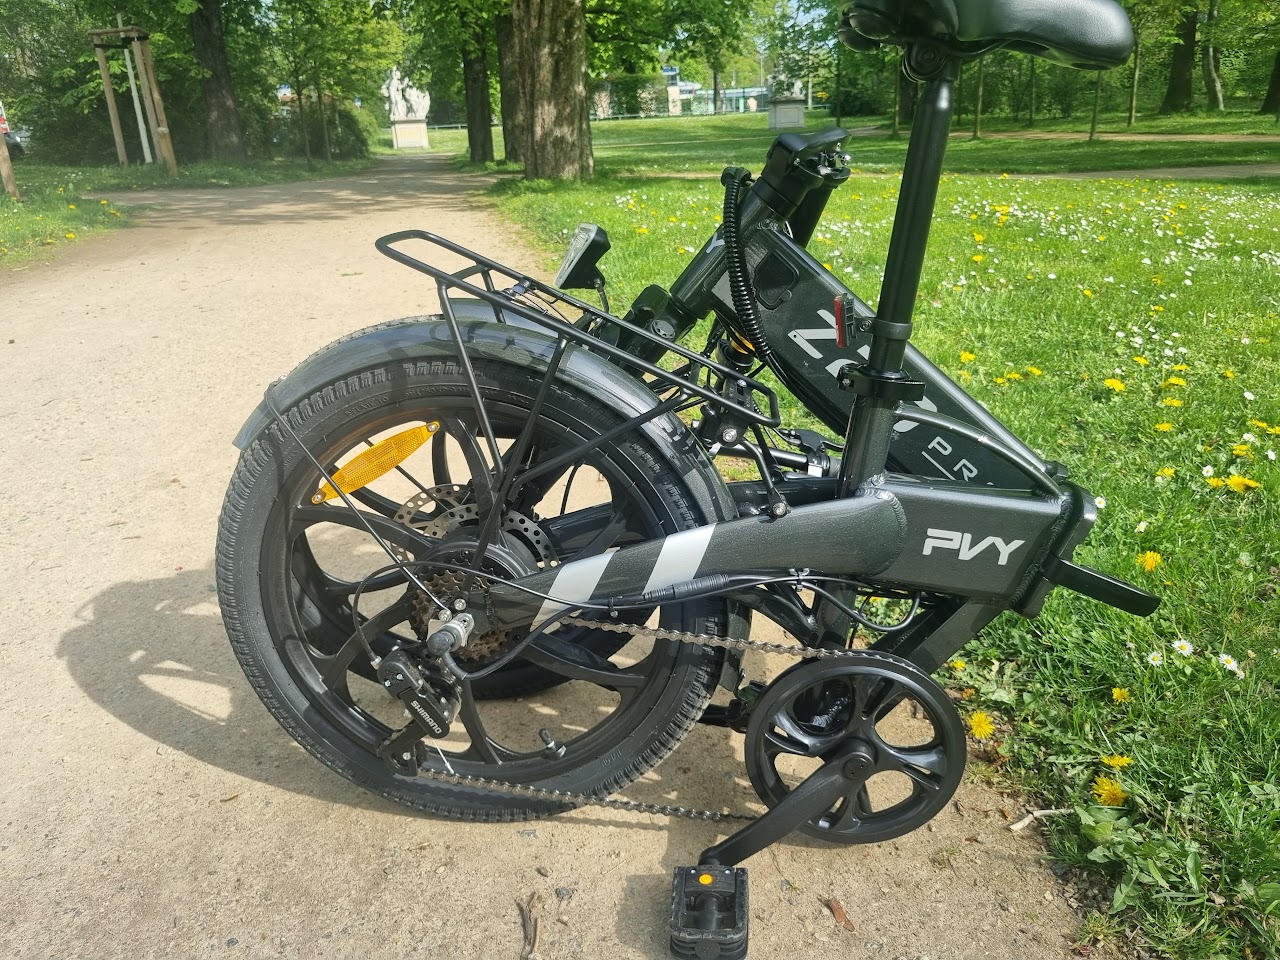 PVY Z20 Pro ausprobiert: Überzeugendes, extrem günstiges und faltbares  E-Bike mit Verbesserungspotential -  News